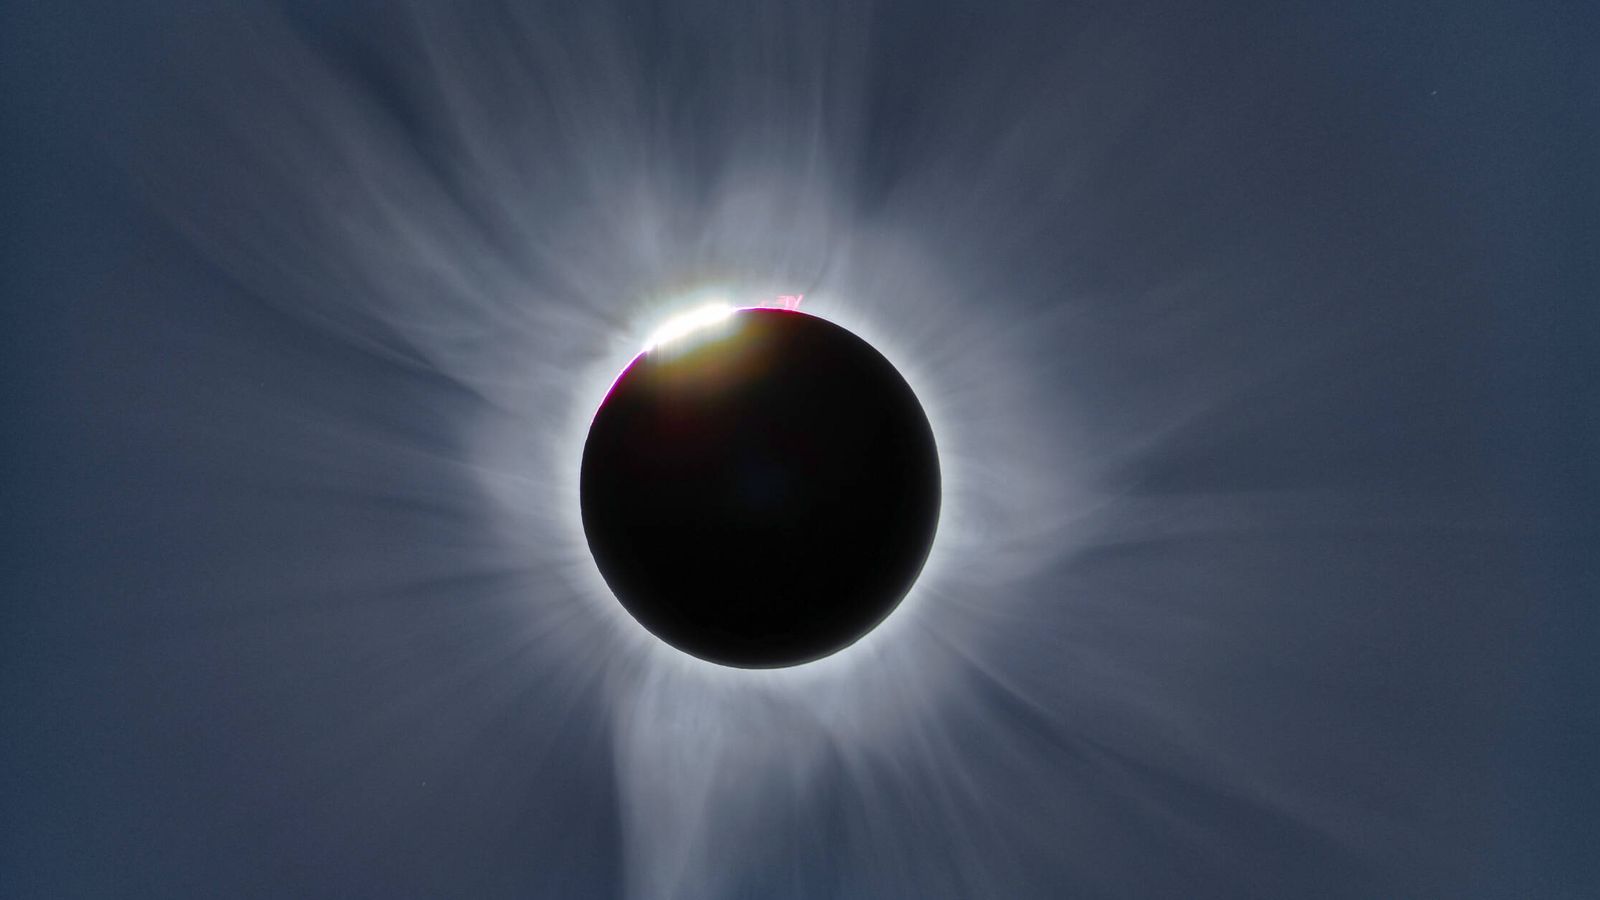 Eclipse de Indonesia, en 2016. (Óscar Martín Mesonero)